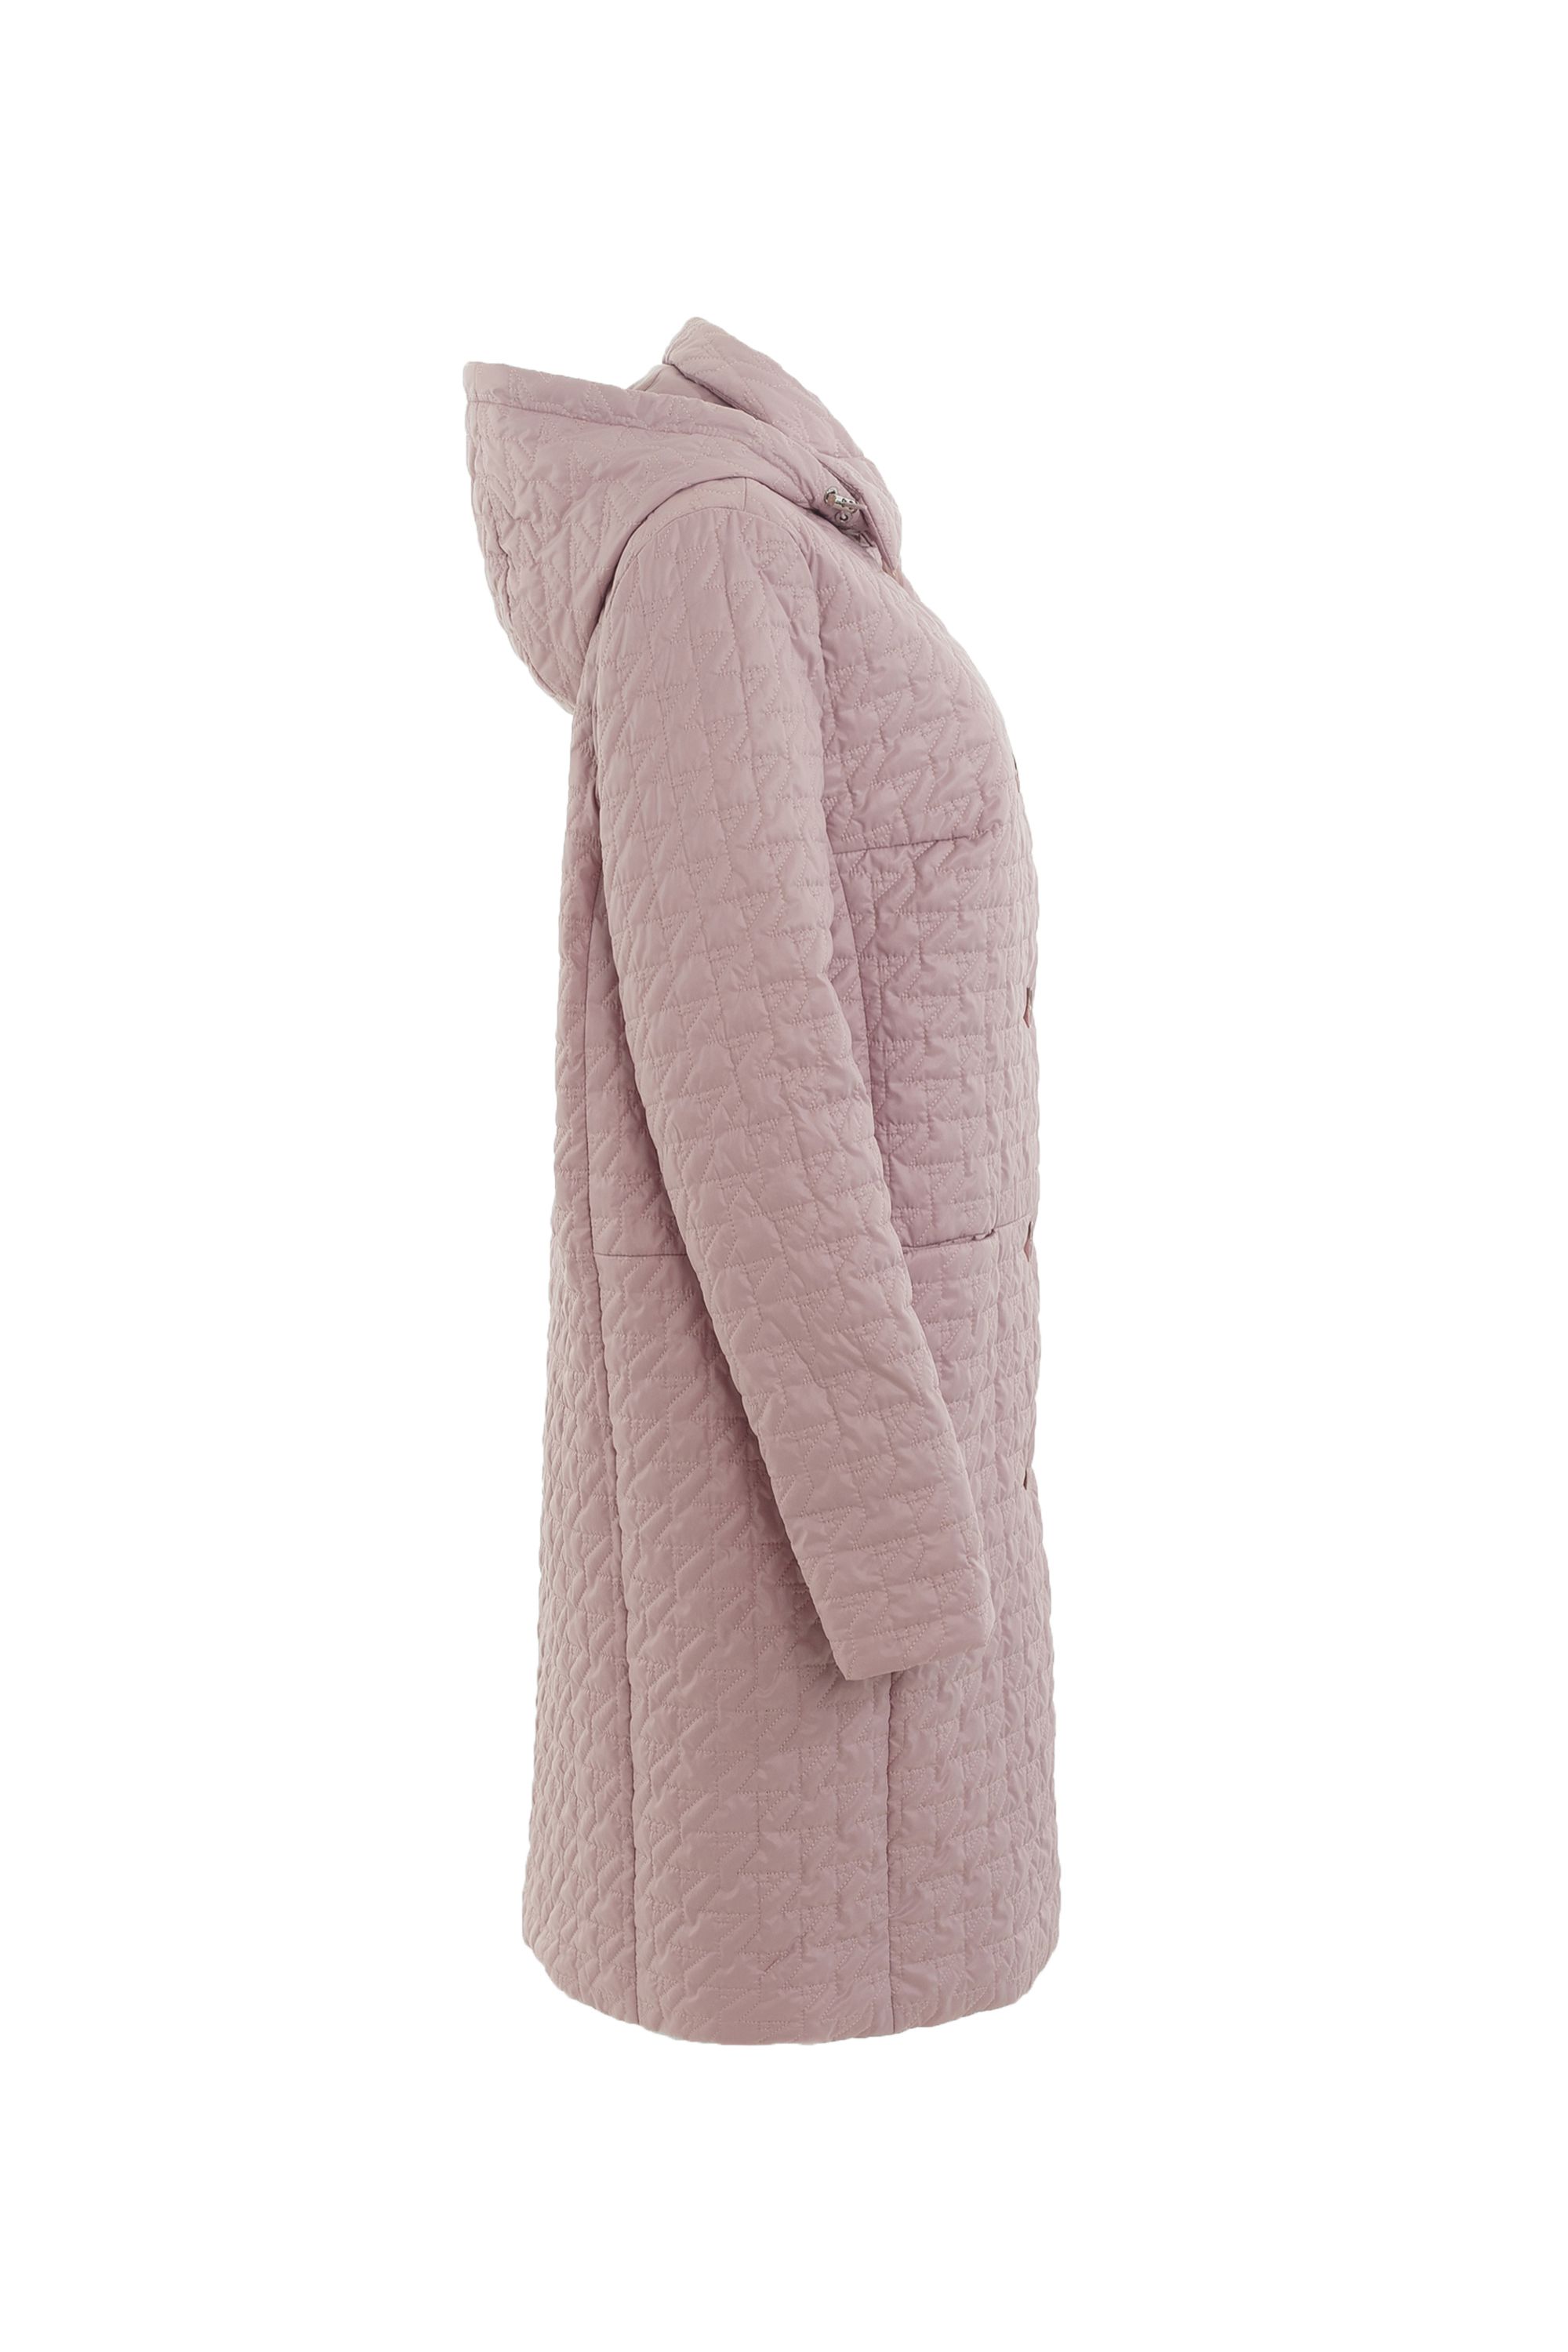 Пальто женское плащевое утепленное 5-12395-1. Фото 2.